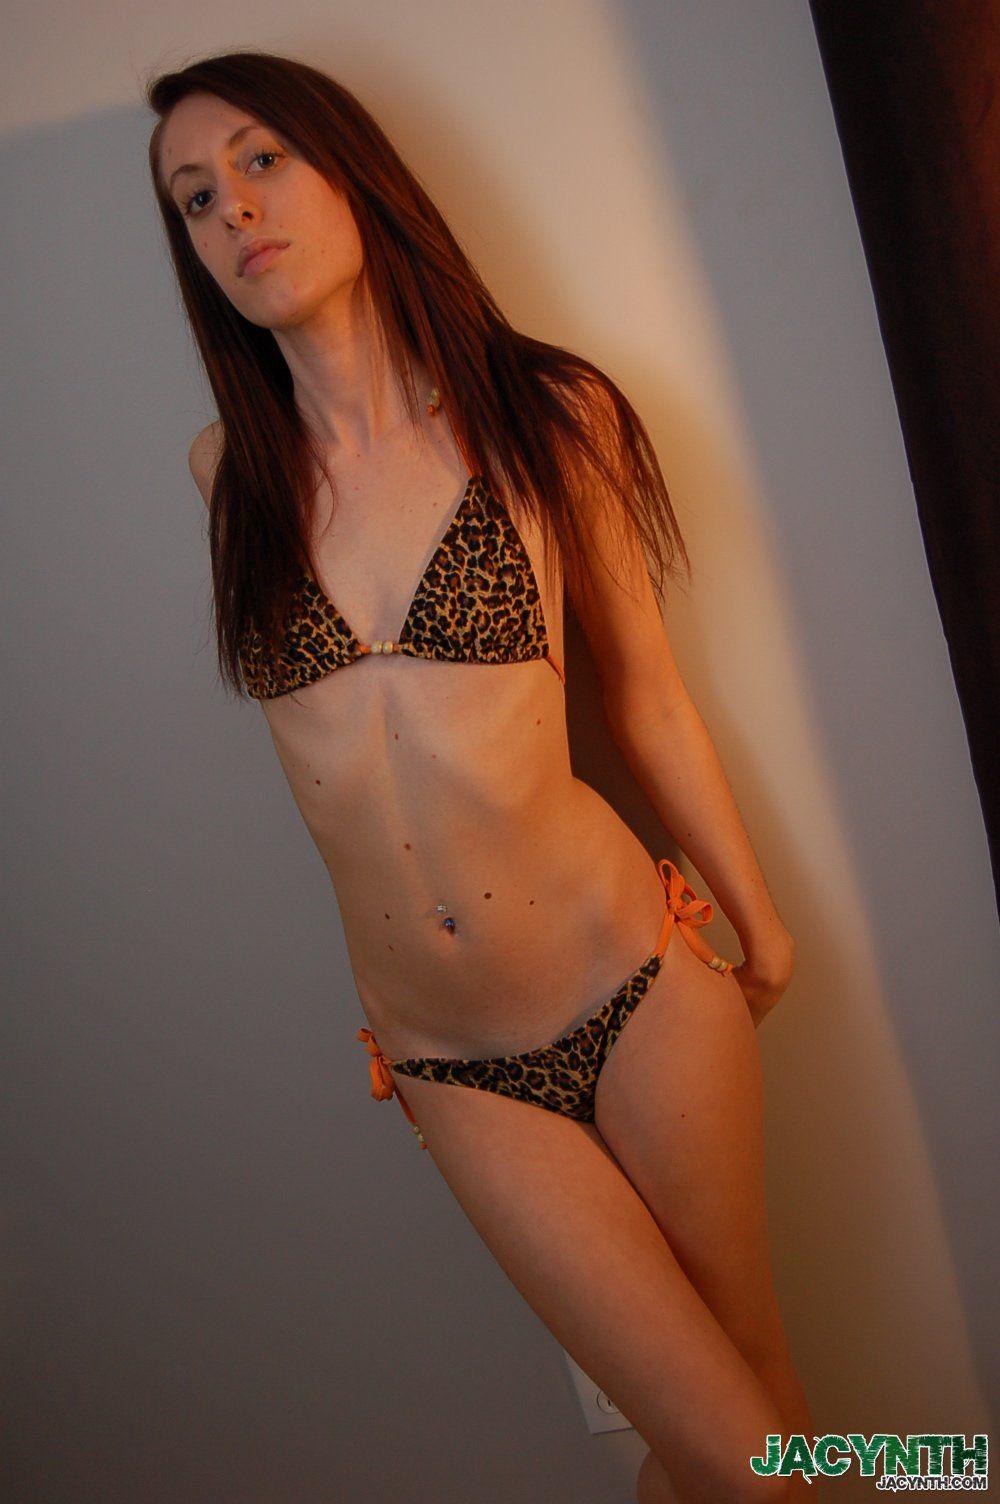 Fotos de la joven jacynth burlándose en un bikini caliente
 #55032914